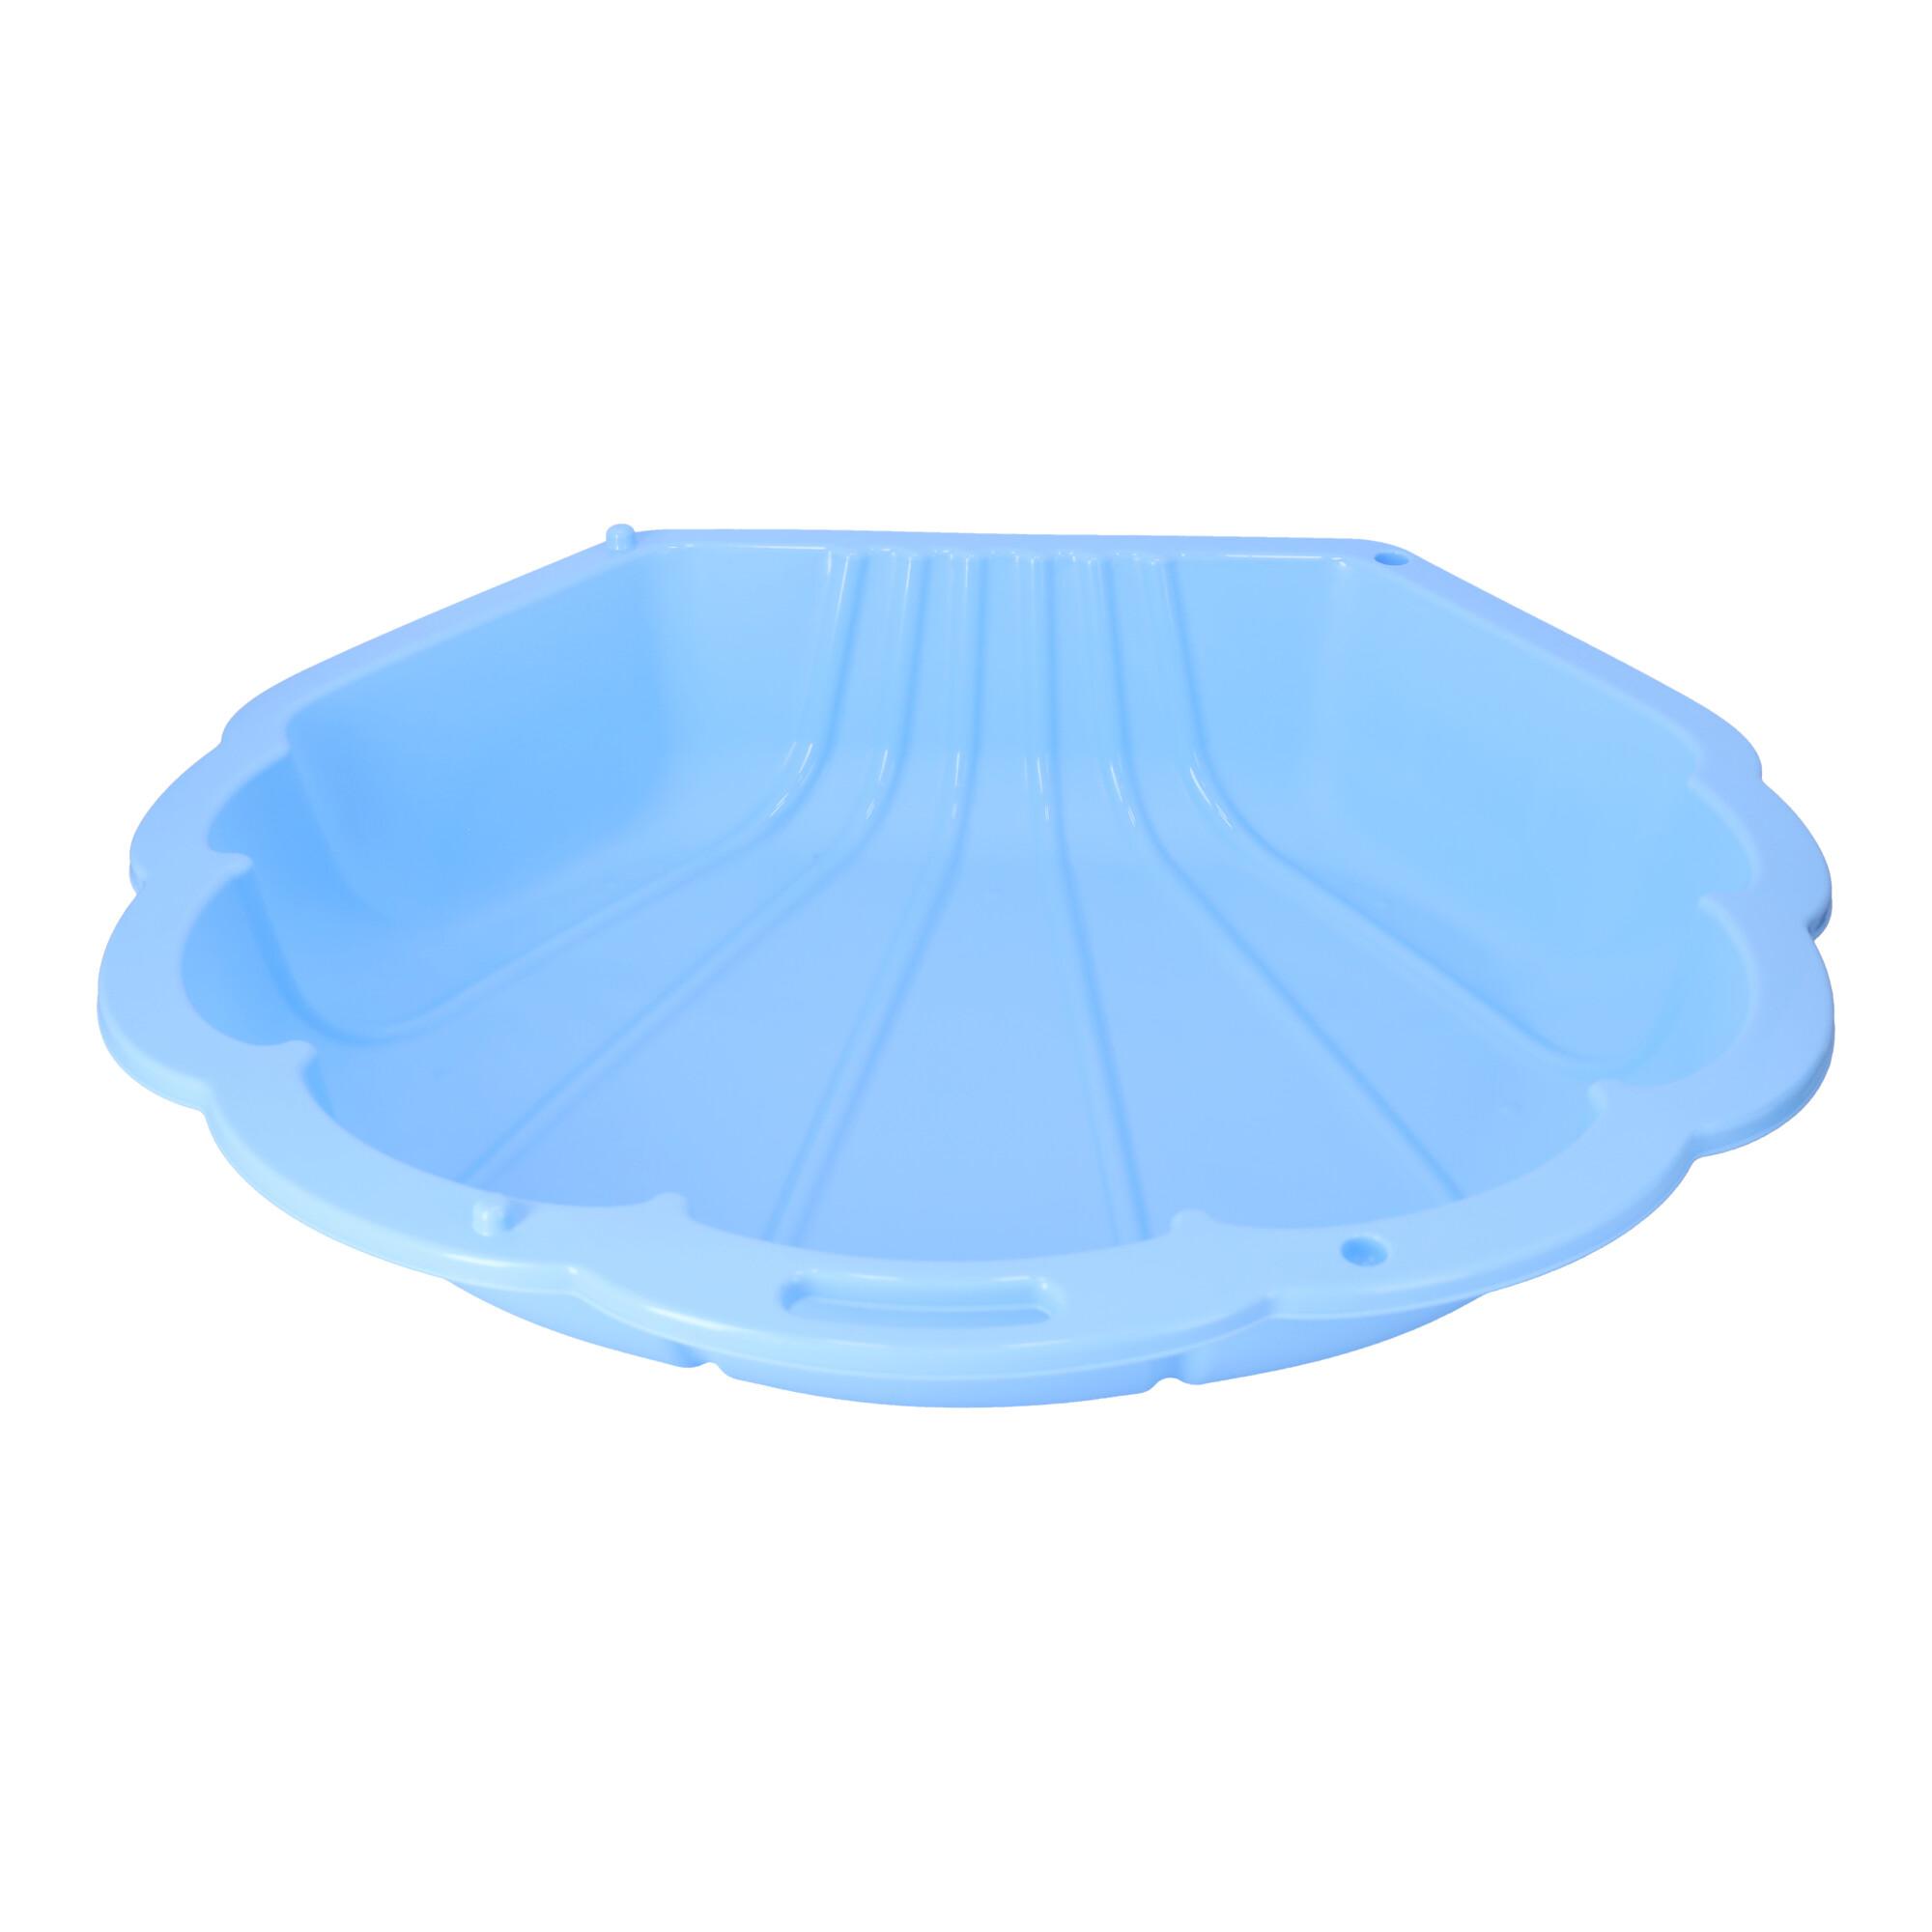 Sandbox Shell for Children, Blue PILSAN